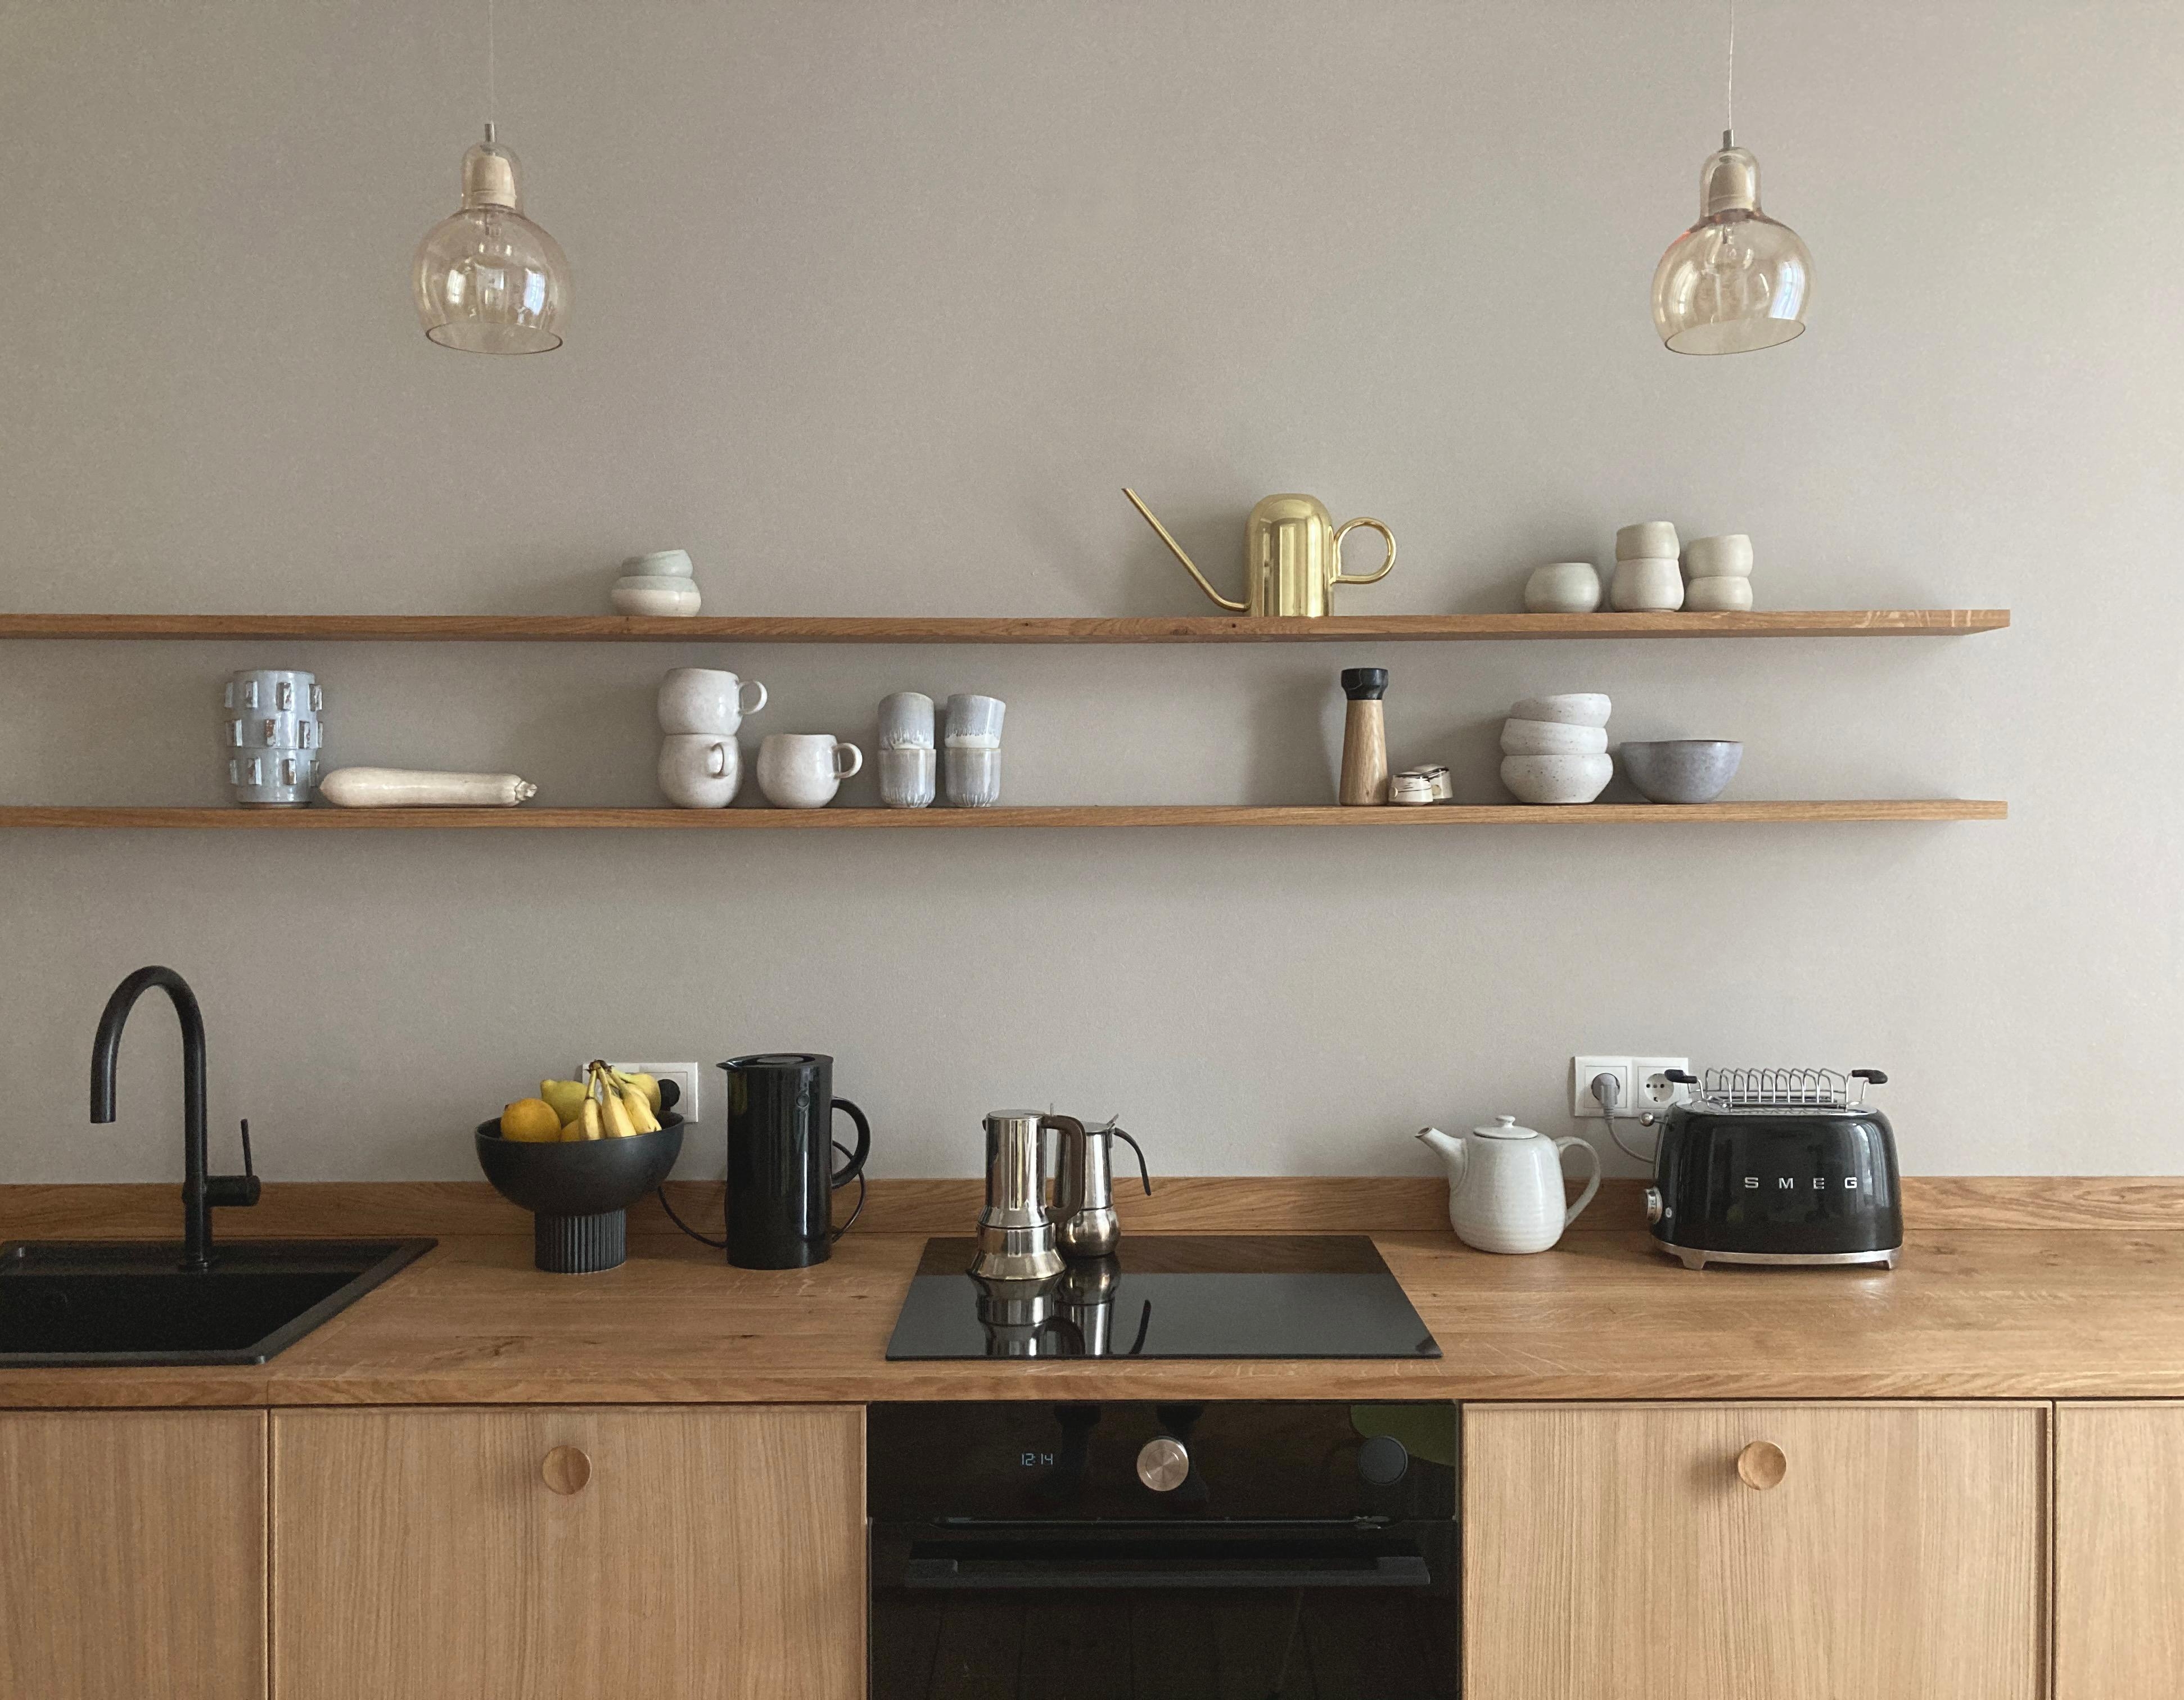 Wie ich mich über den neuen Blick in die Küche freue ... #scandinaviandesign #kitchendesign